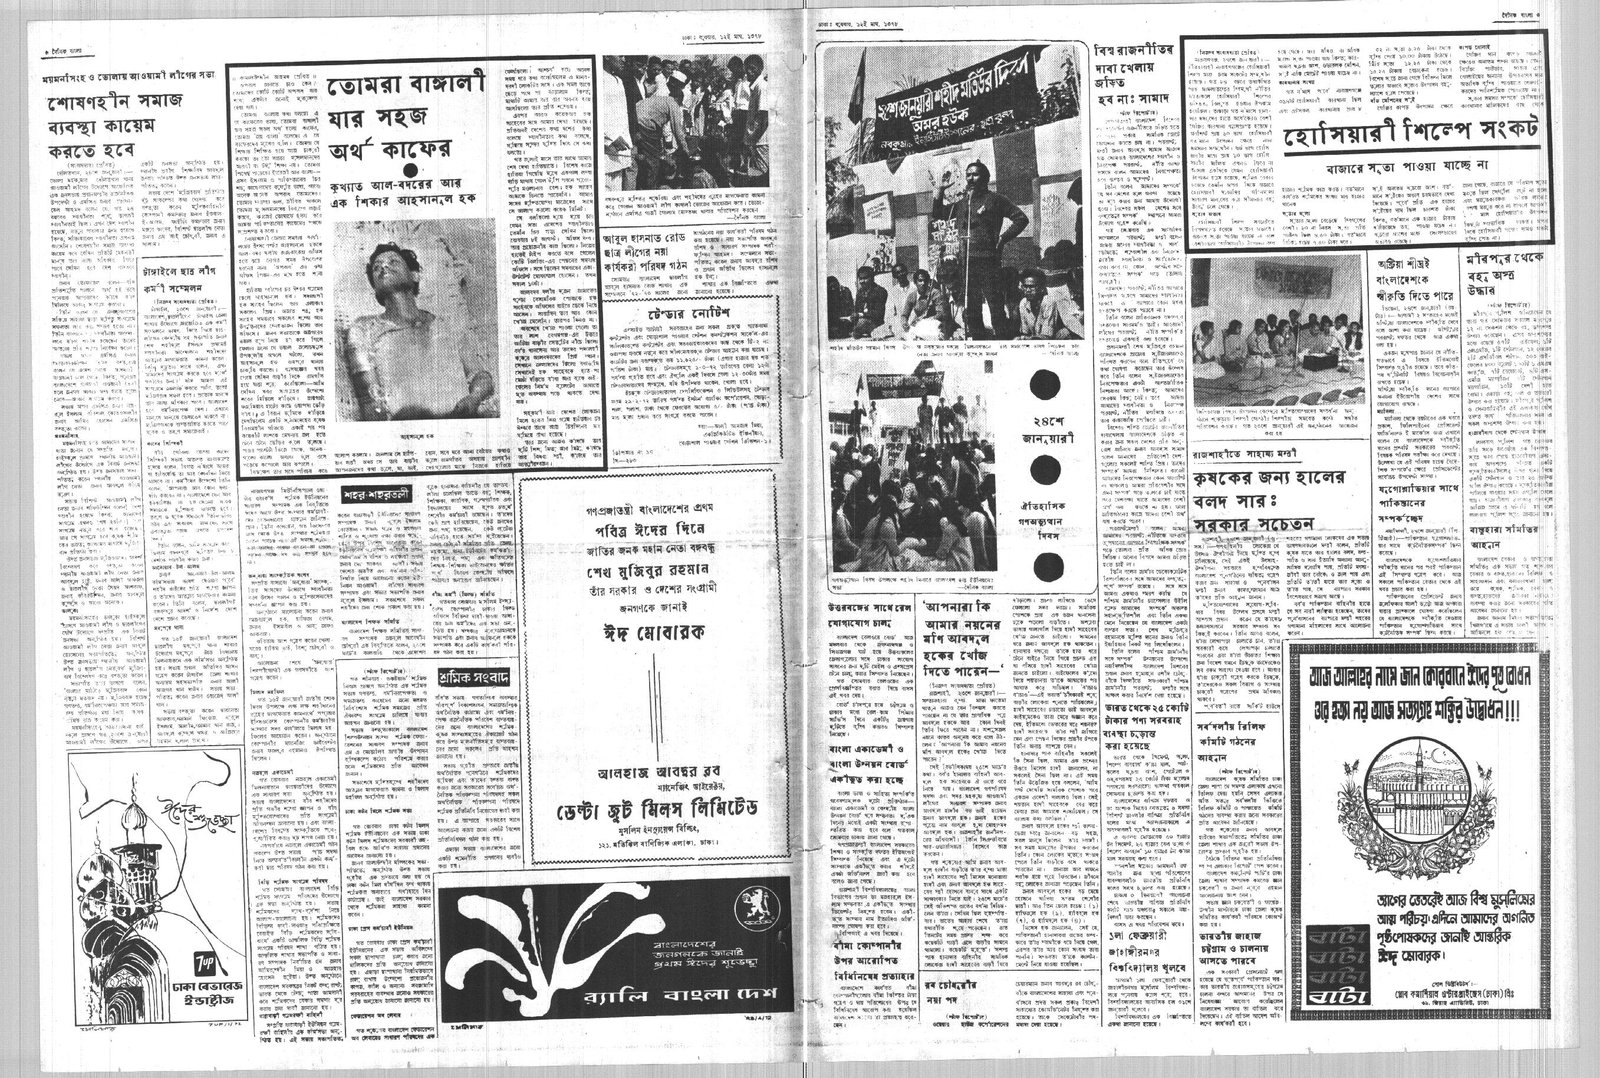 26JAN1972-DAINIK BANGLA-Regular-Page 3 and 6